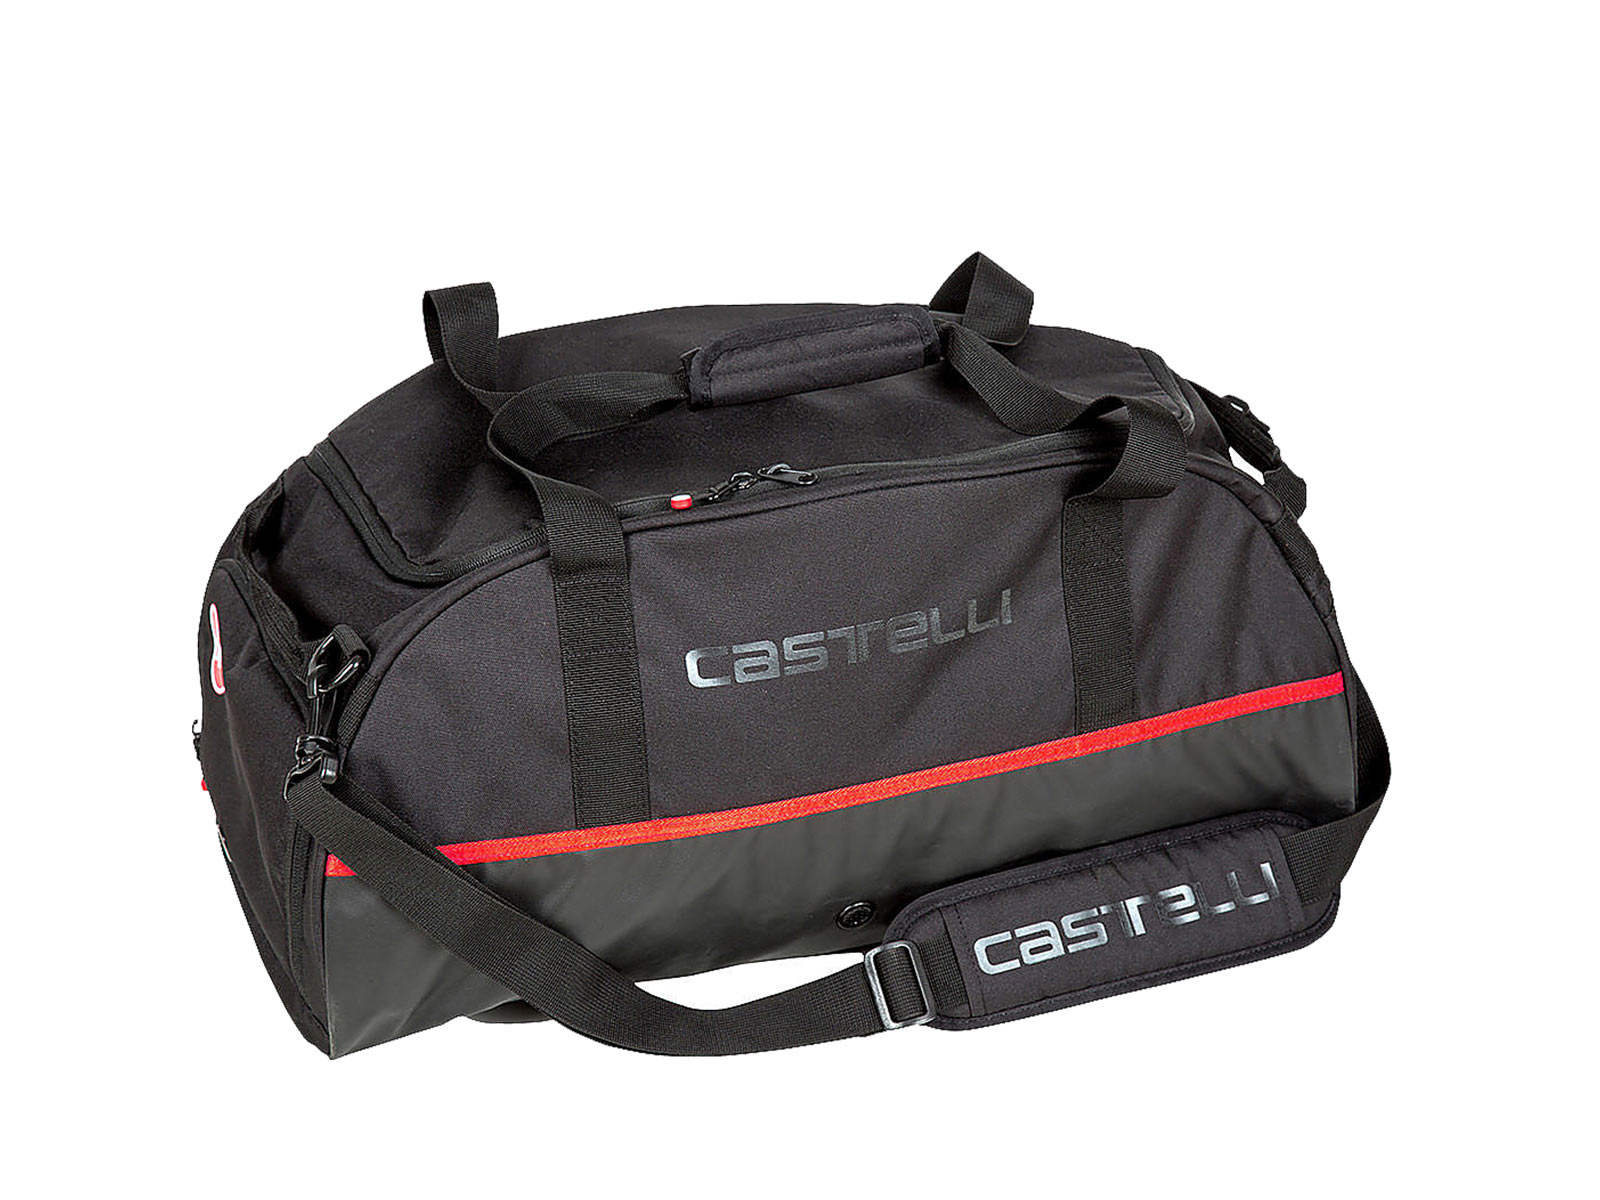 Castelli Gear Duffle Bag 2 - Black